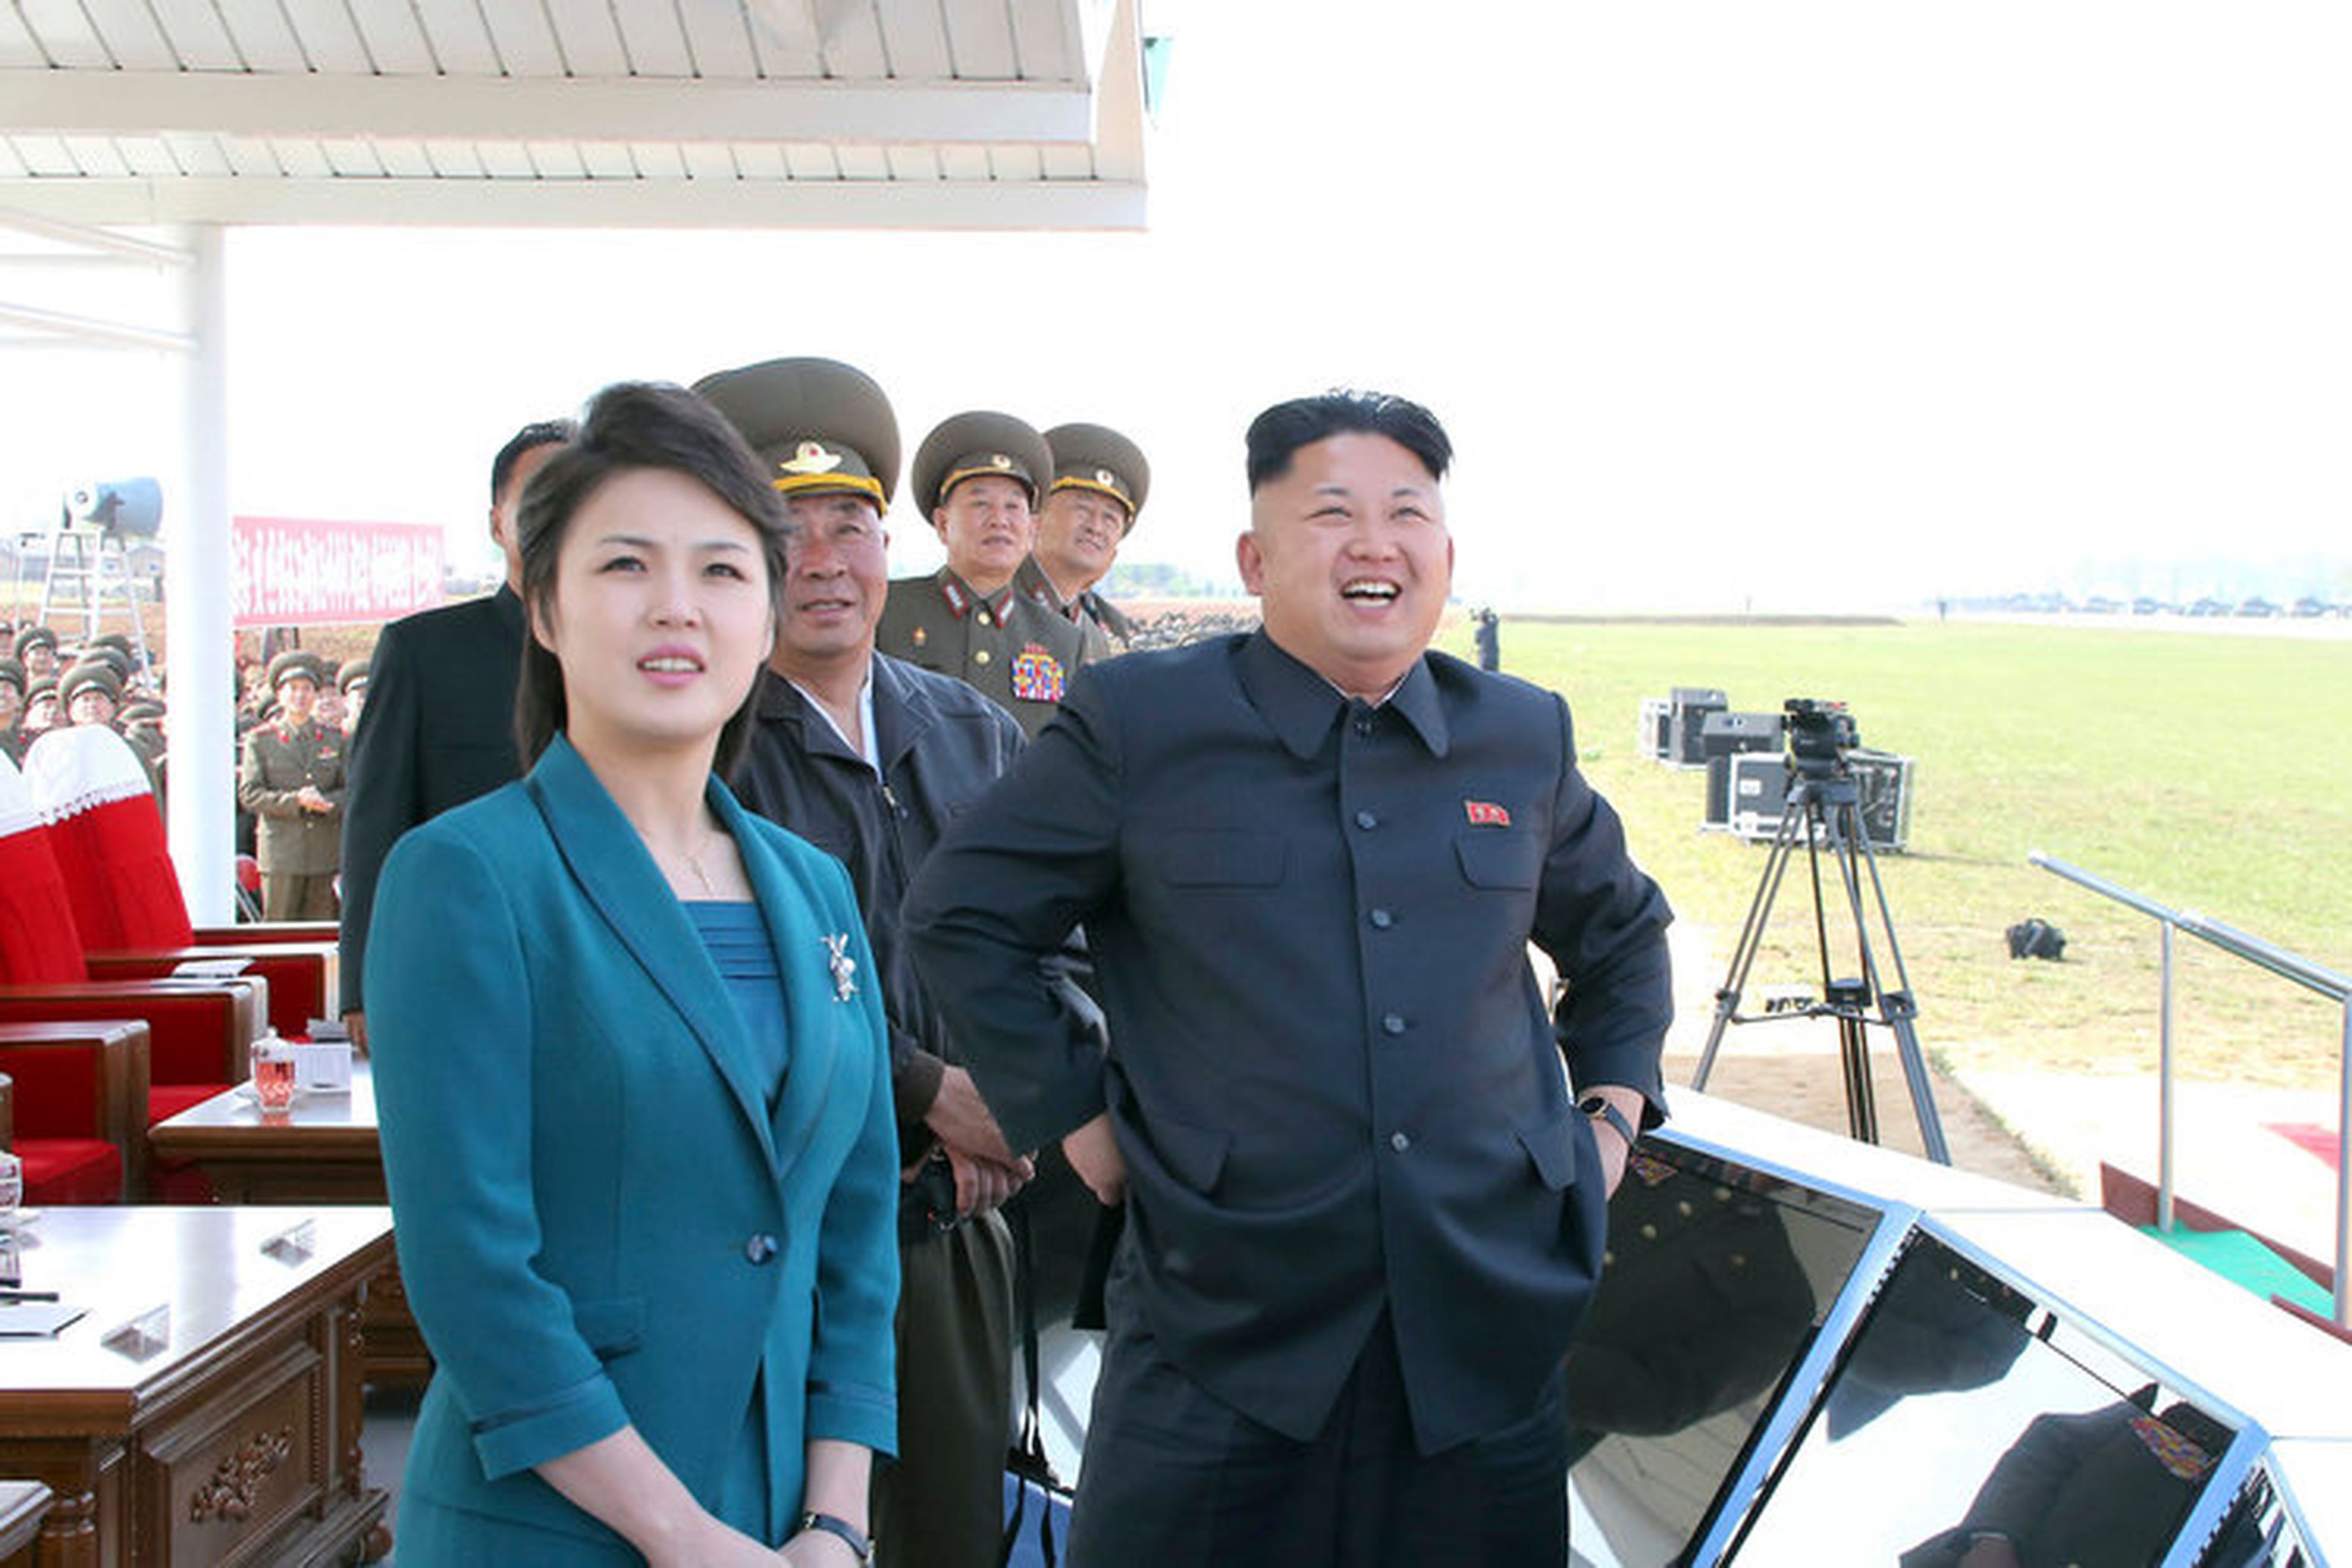 Kim junto a Ri durante la competición de vuelos de combate en 2014, junto a comandantes del la Fuerza Aérea del Ejército Popular Coreano en esta foto sin fecha publicada por la KCNA en Pyongyang el 10 de mayo de 2014.